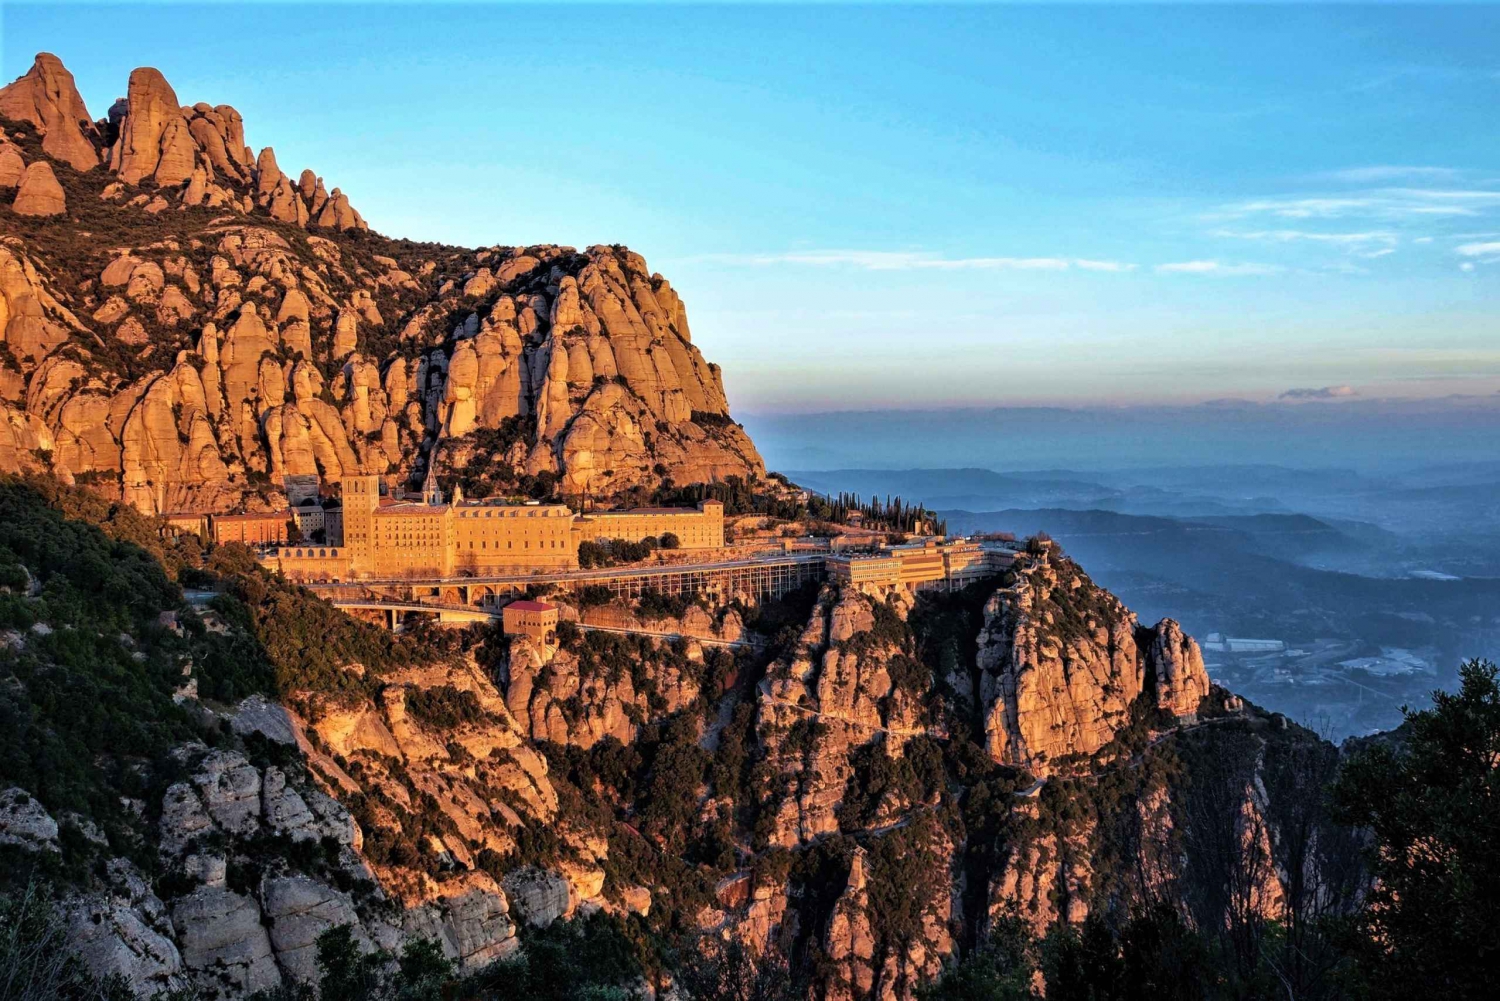 Barcelonasta: Montserratin luostari, helppo vaellus, köysirata